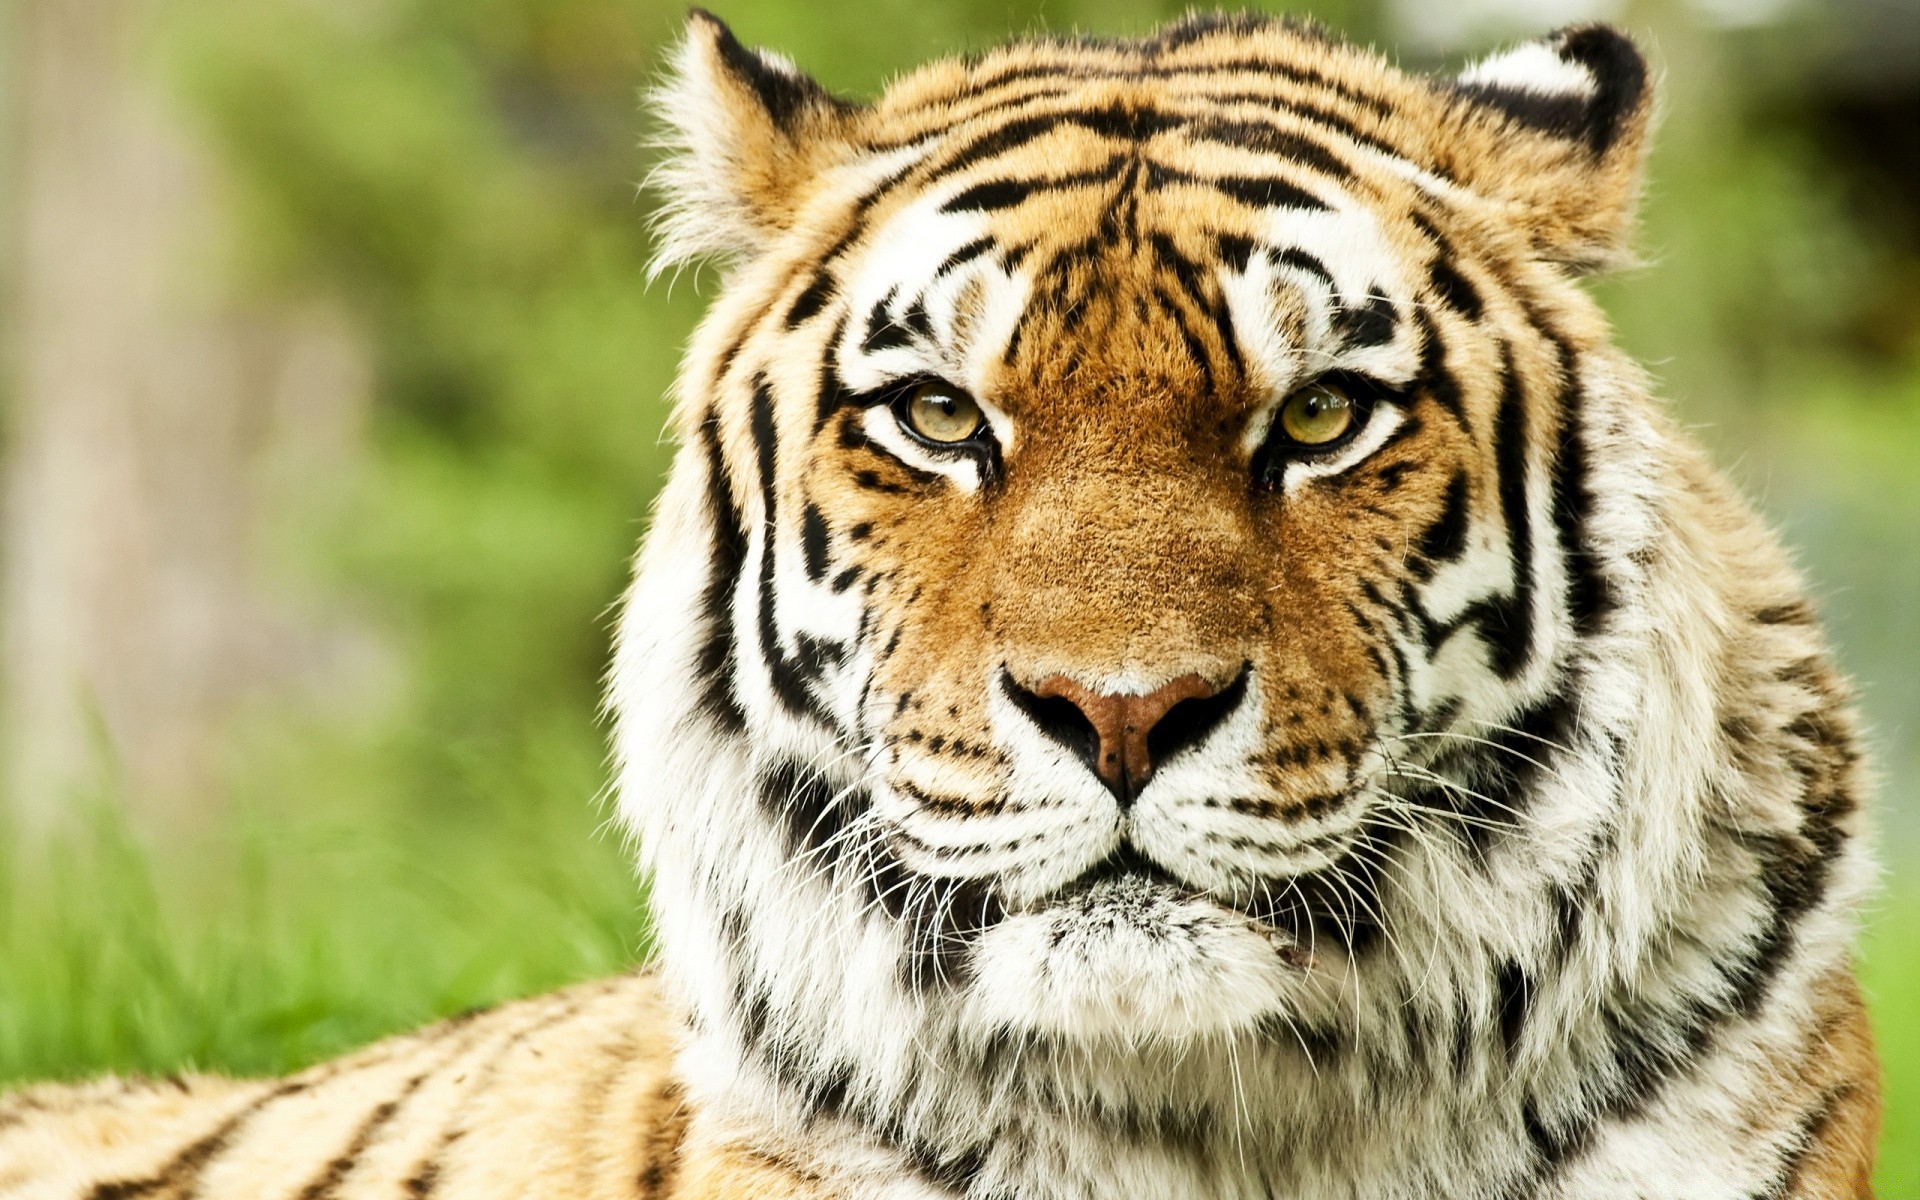 животные дикой природы тигр кошка животное хищник мясоед охотник млекопитающее дикий большой джунгли зоопарк сафари глядя мех охота сибирский злой тигрис вспыльчивый